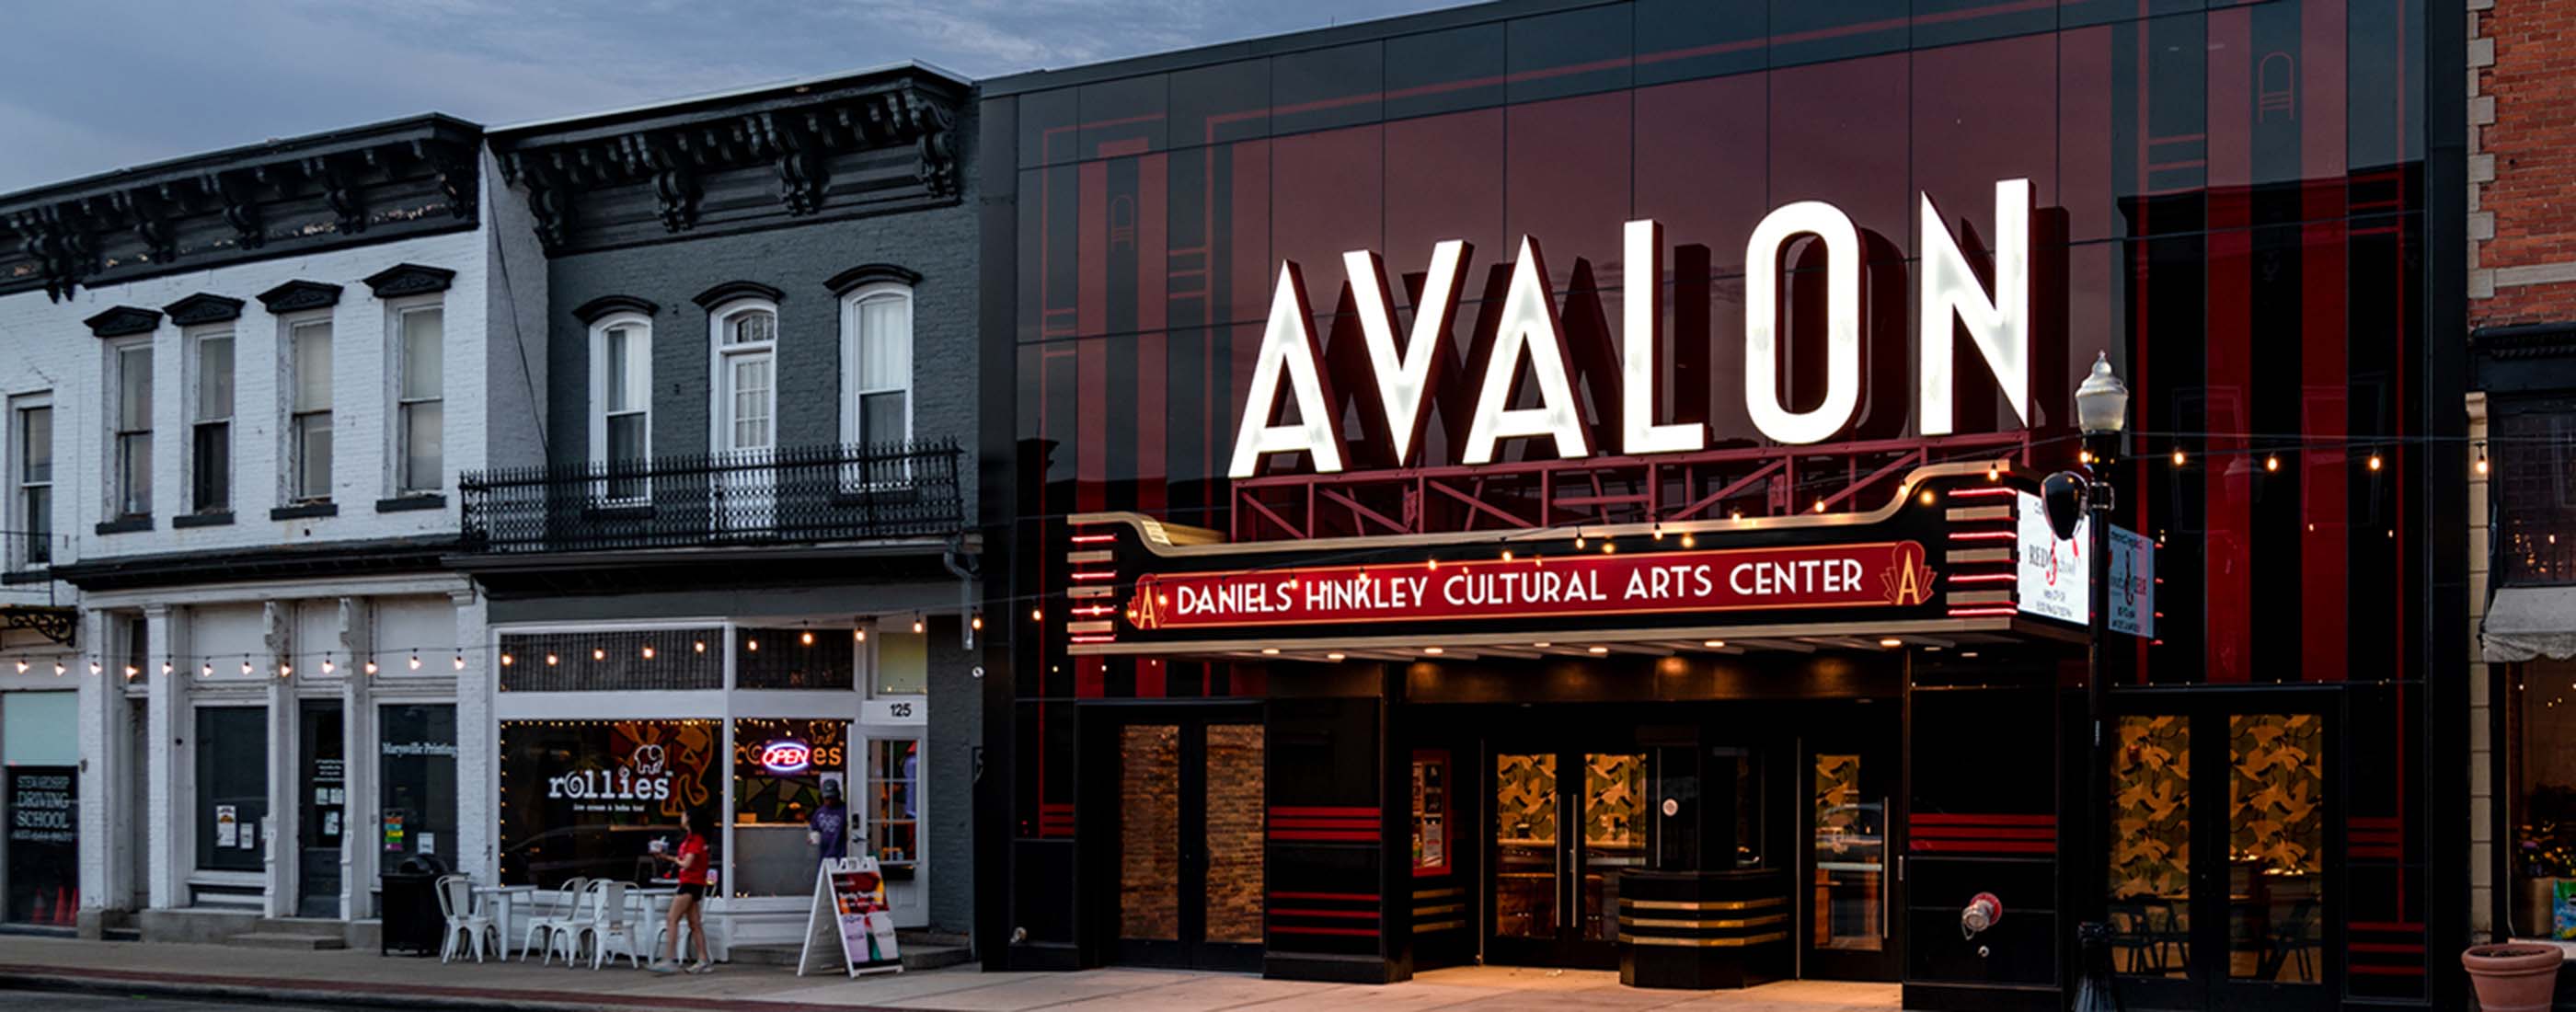 Marysville Uptown Theater Association Avalon Theater OHM Advisors